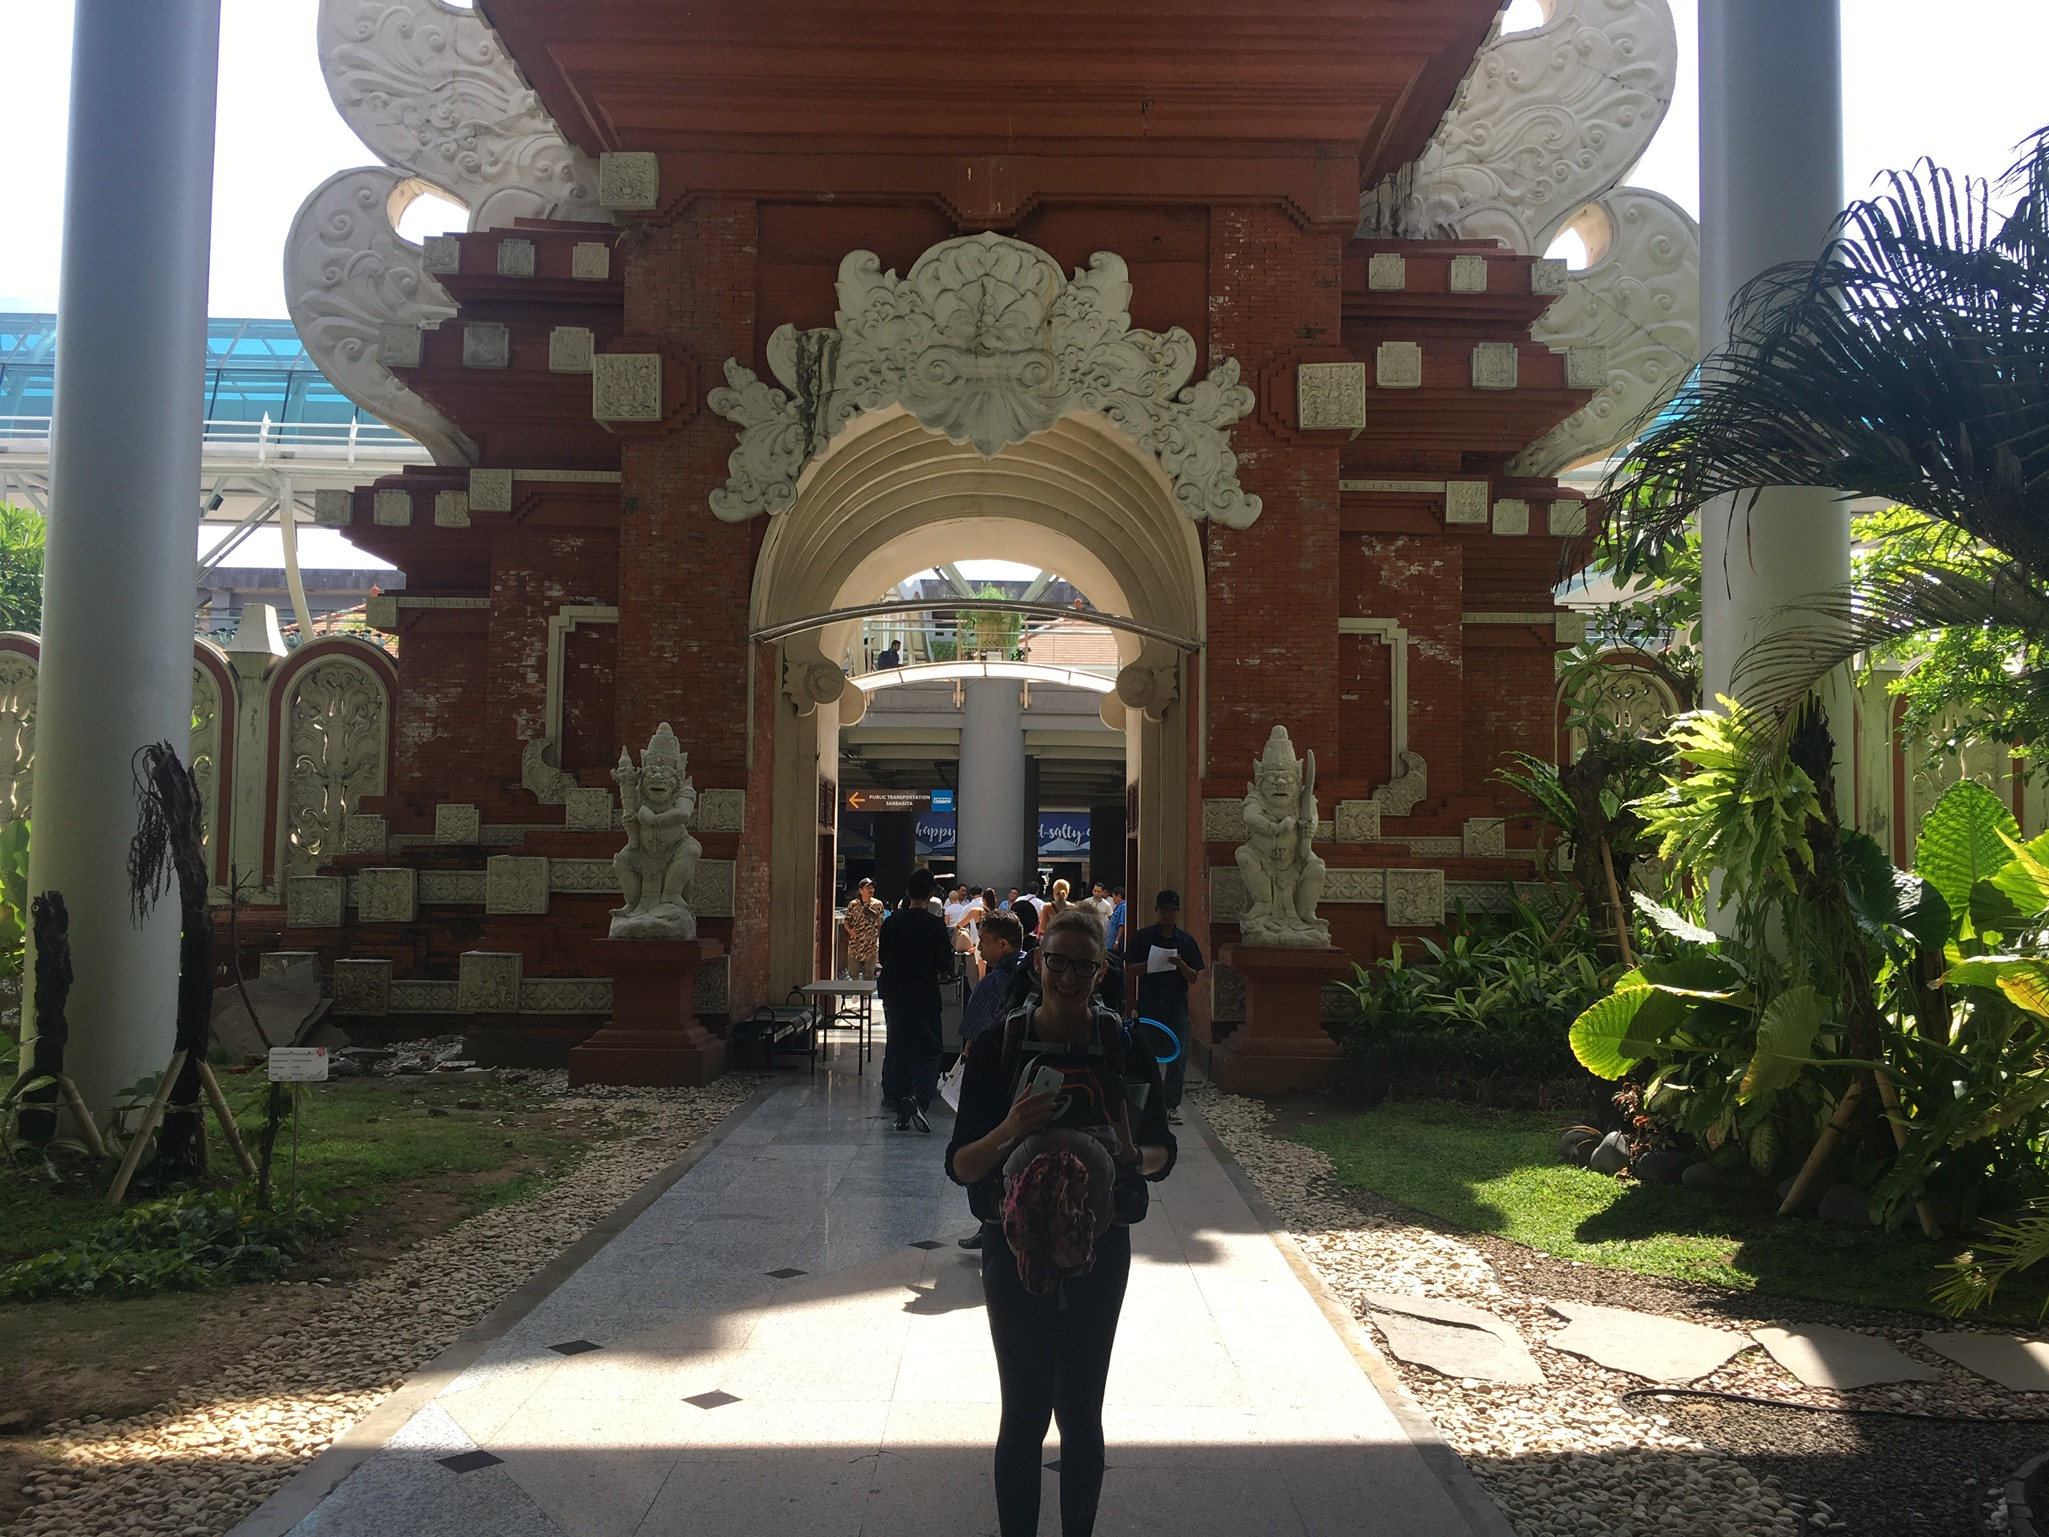 Bali 2018